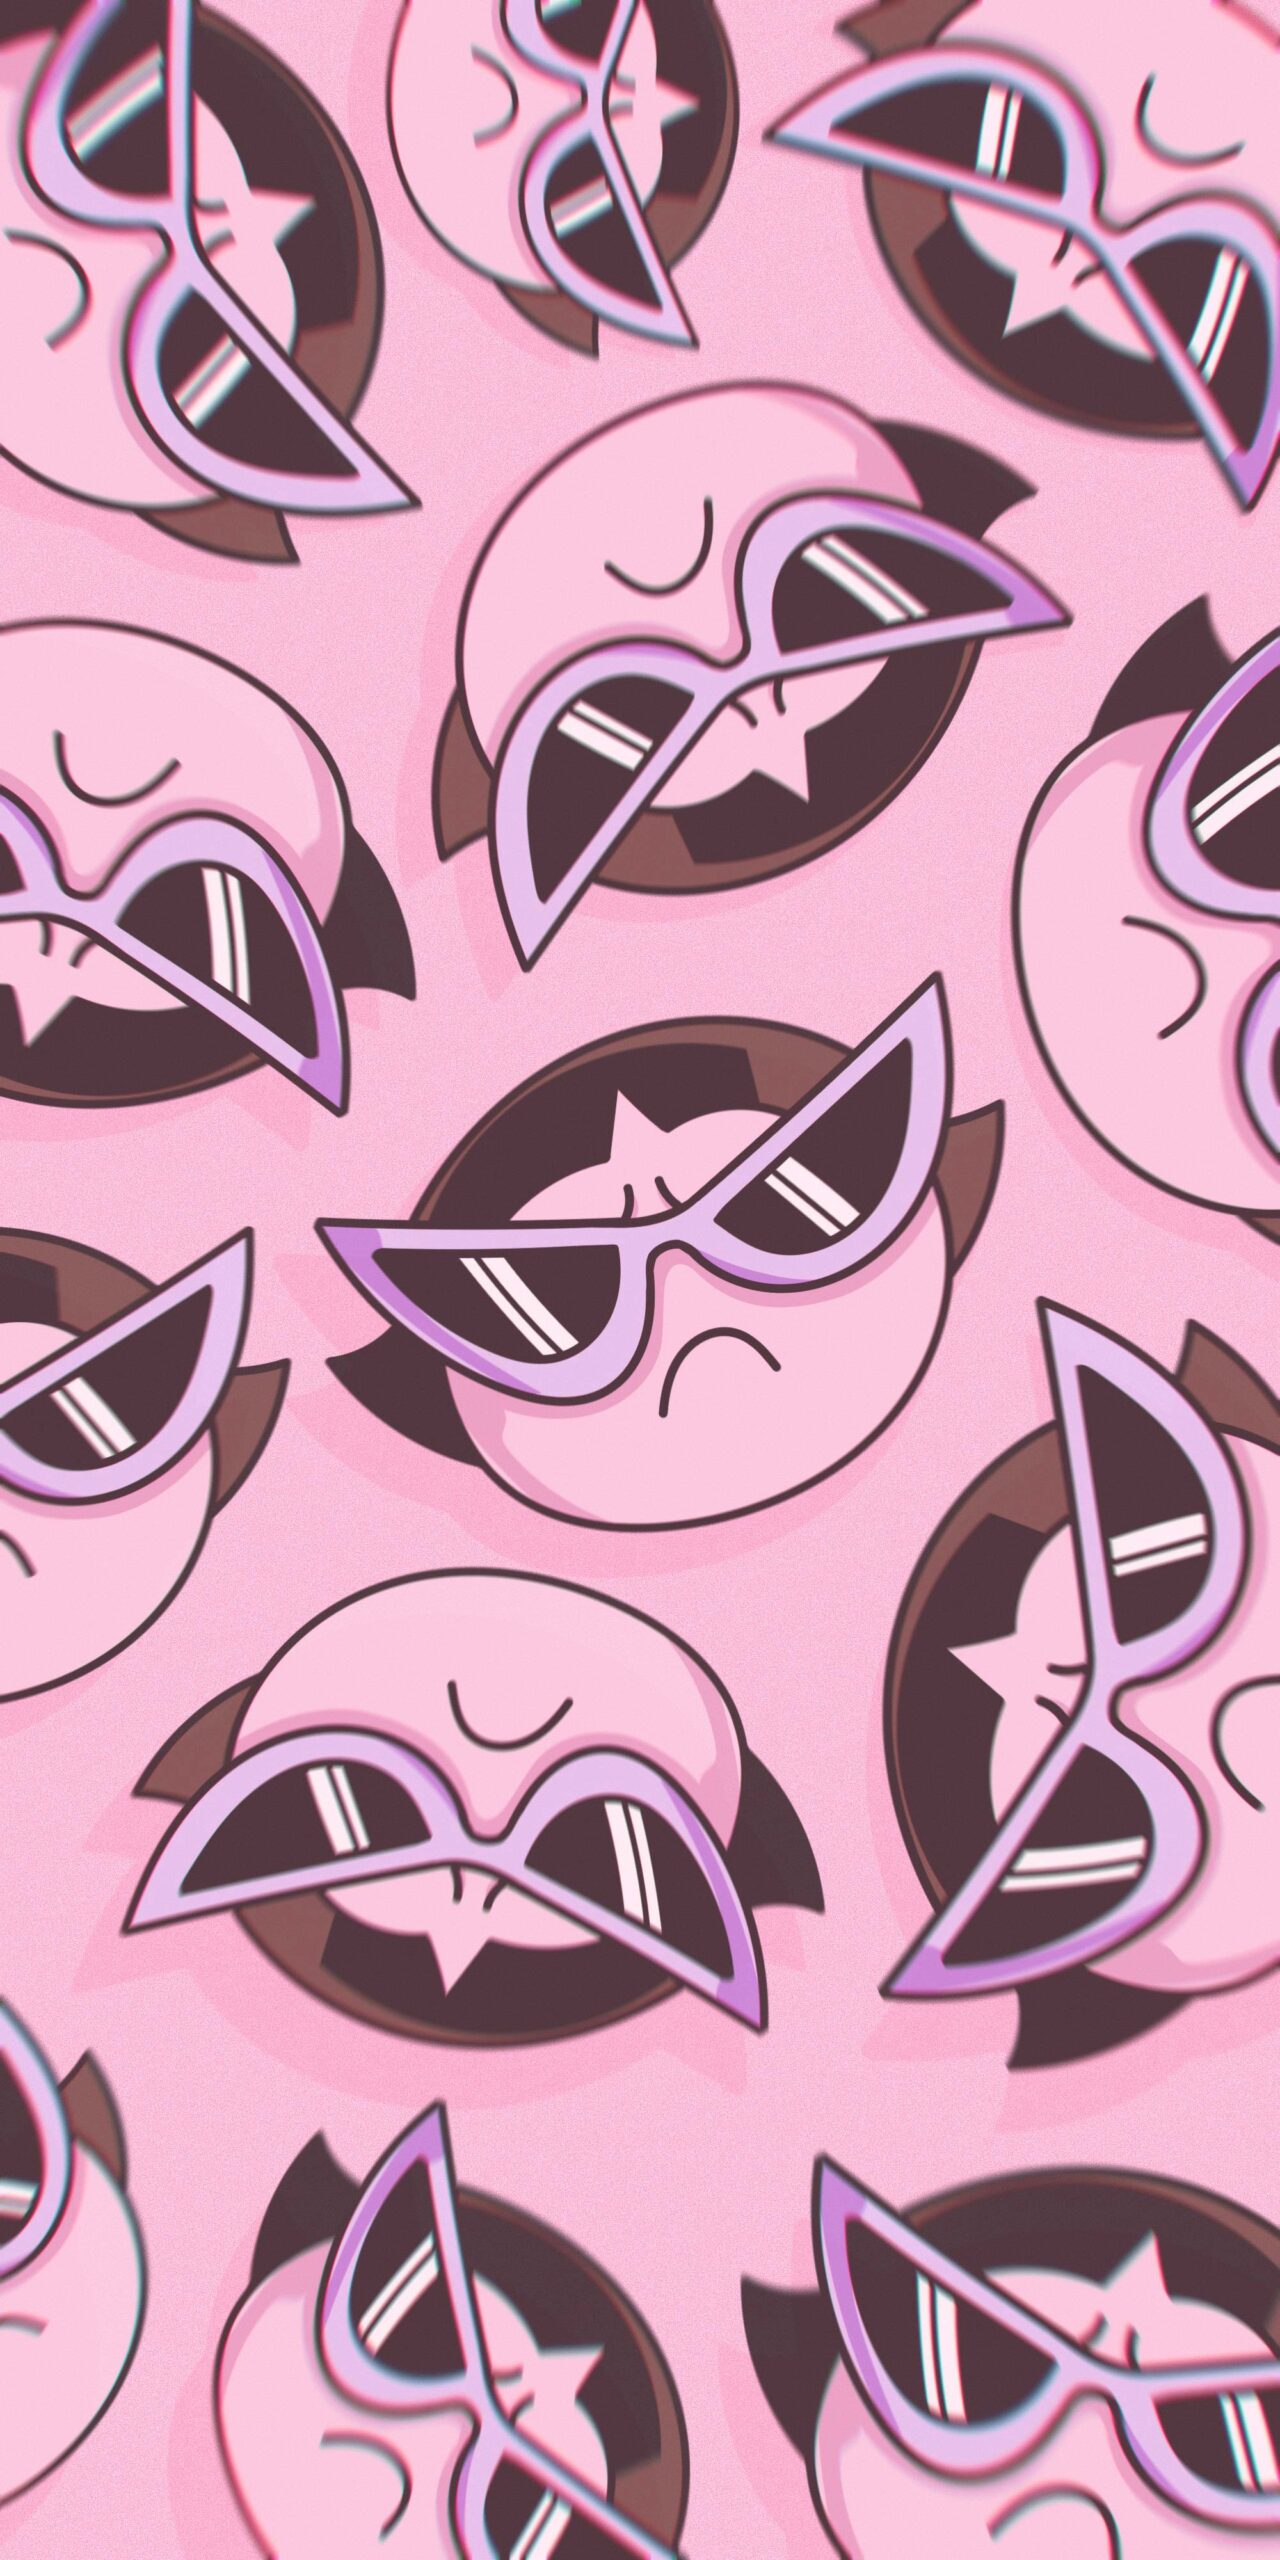 powerpuff girls buttercup cat eye sunglasses pink background